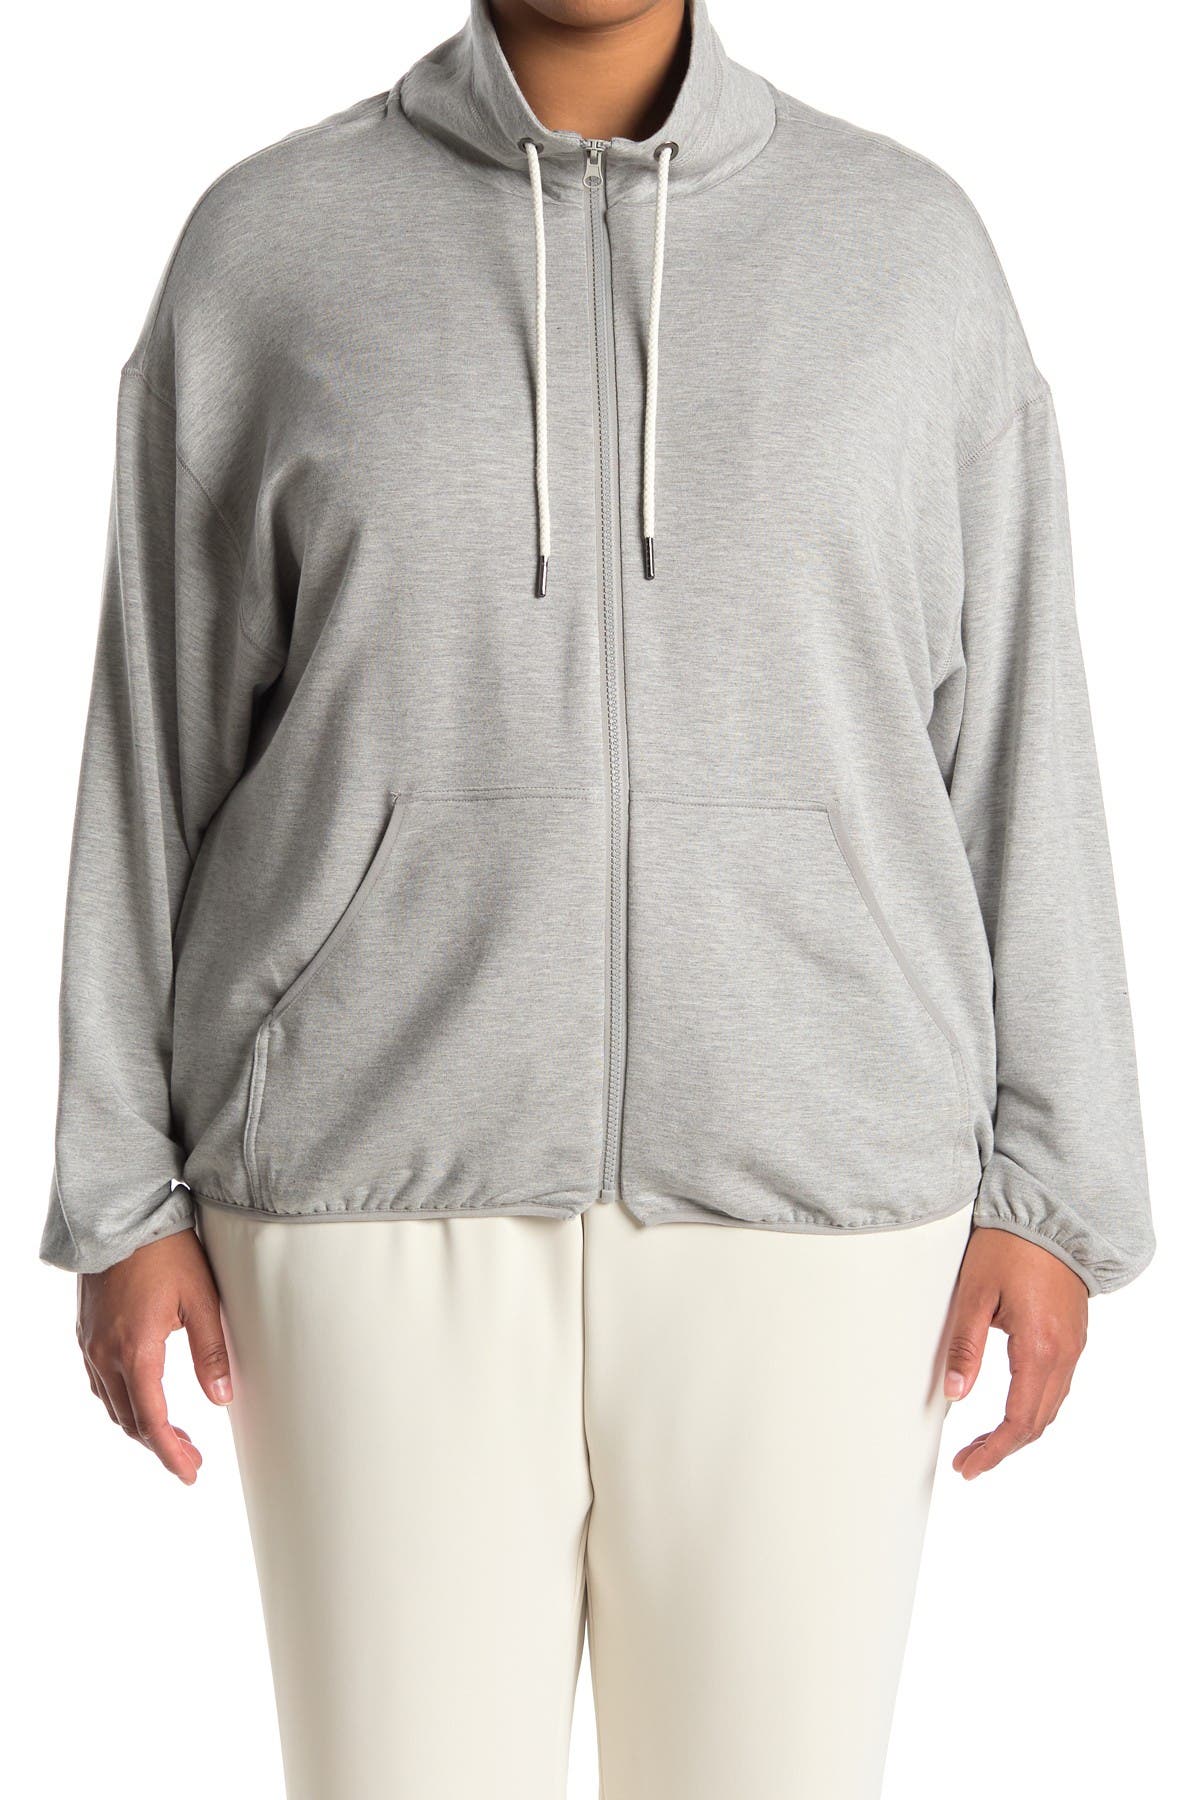 Melloday Draw Cord Mock Neck Zip Front Sweatshirt In Medium Grey